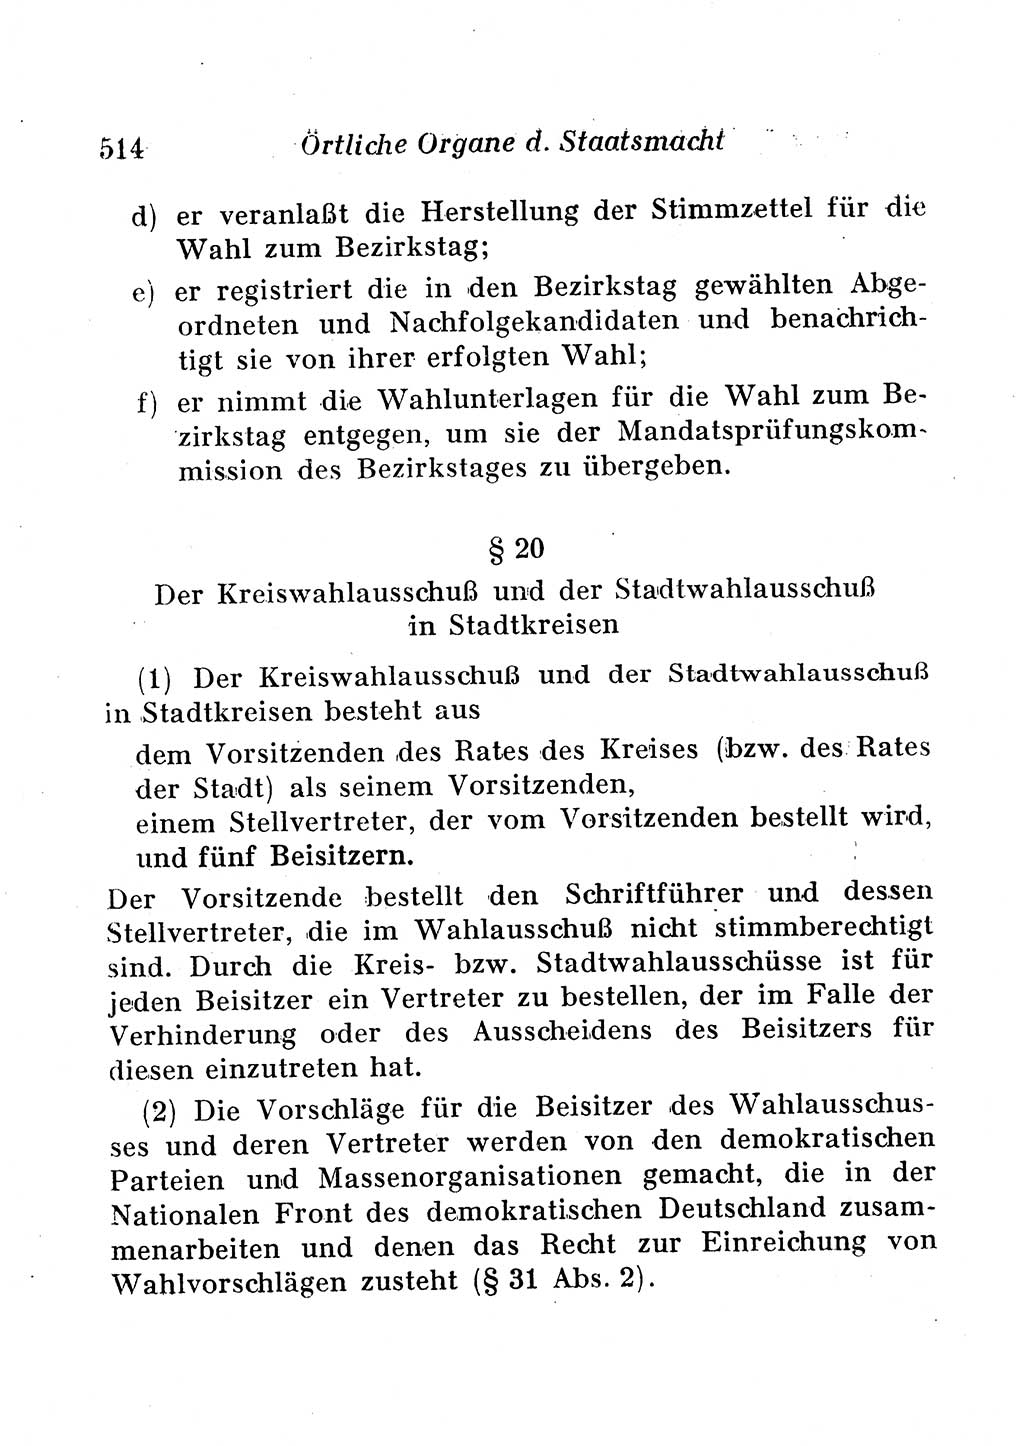 Staats- und verwaltungsrechtliche Gesetze der Deutschen Demokratischen Republik (DDR) 1958, Seite 514 (StVerwR Ges. DDR 1958, S. 514)